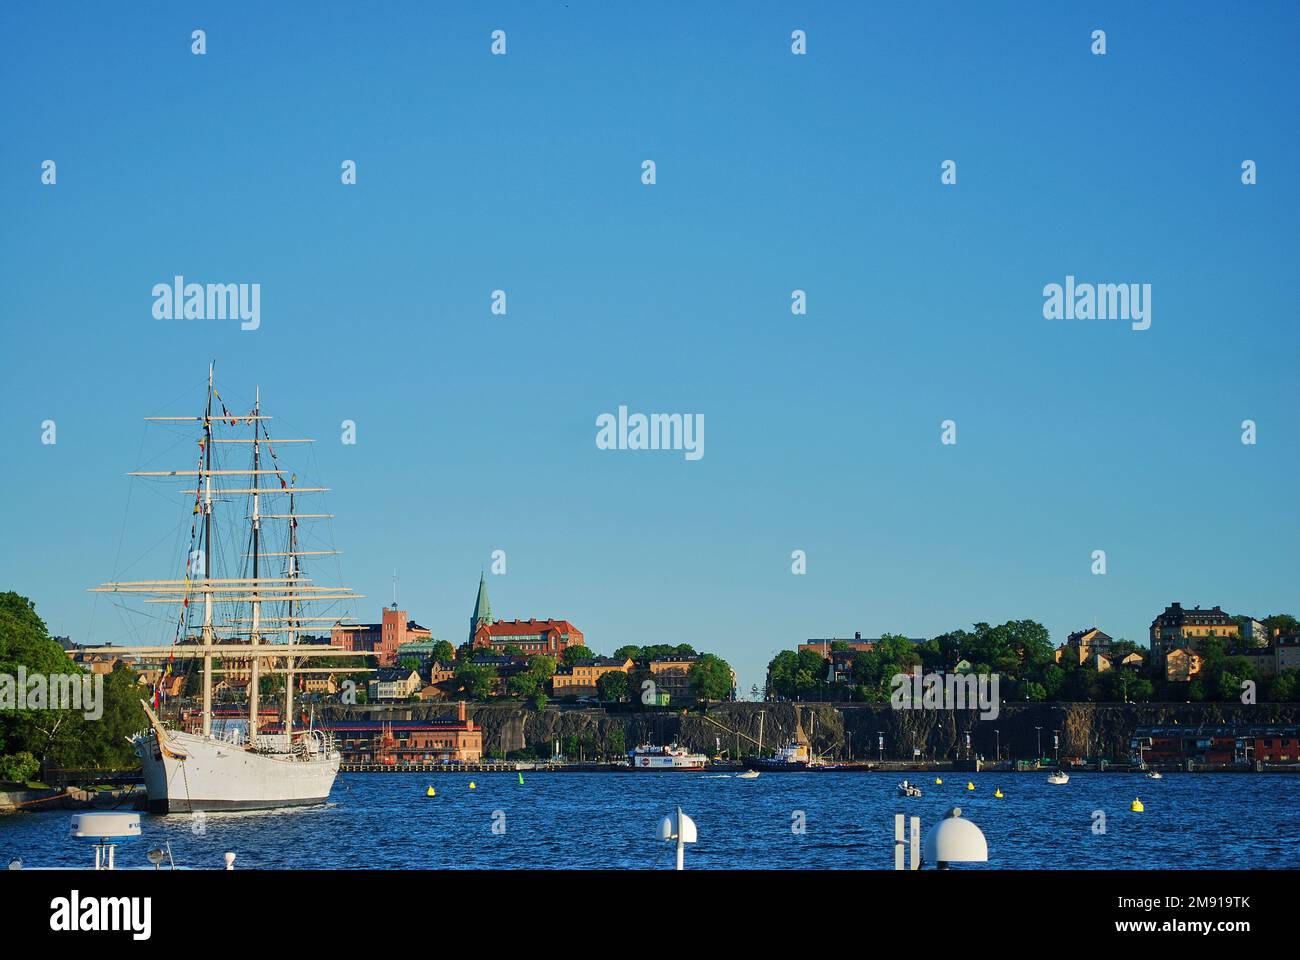 Paesaggio urbano della capitale svedese Stoccolma con le vie d'acqua del porto sulla costa del mar baltico Foto Stock